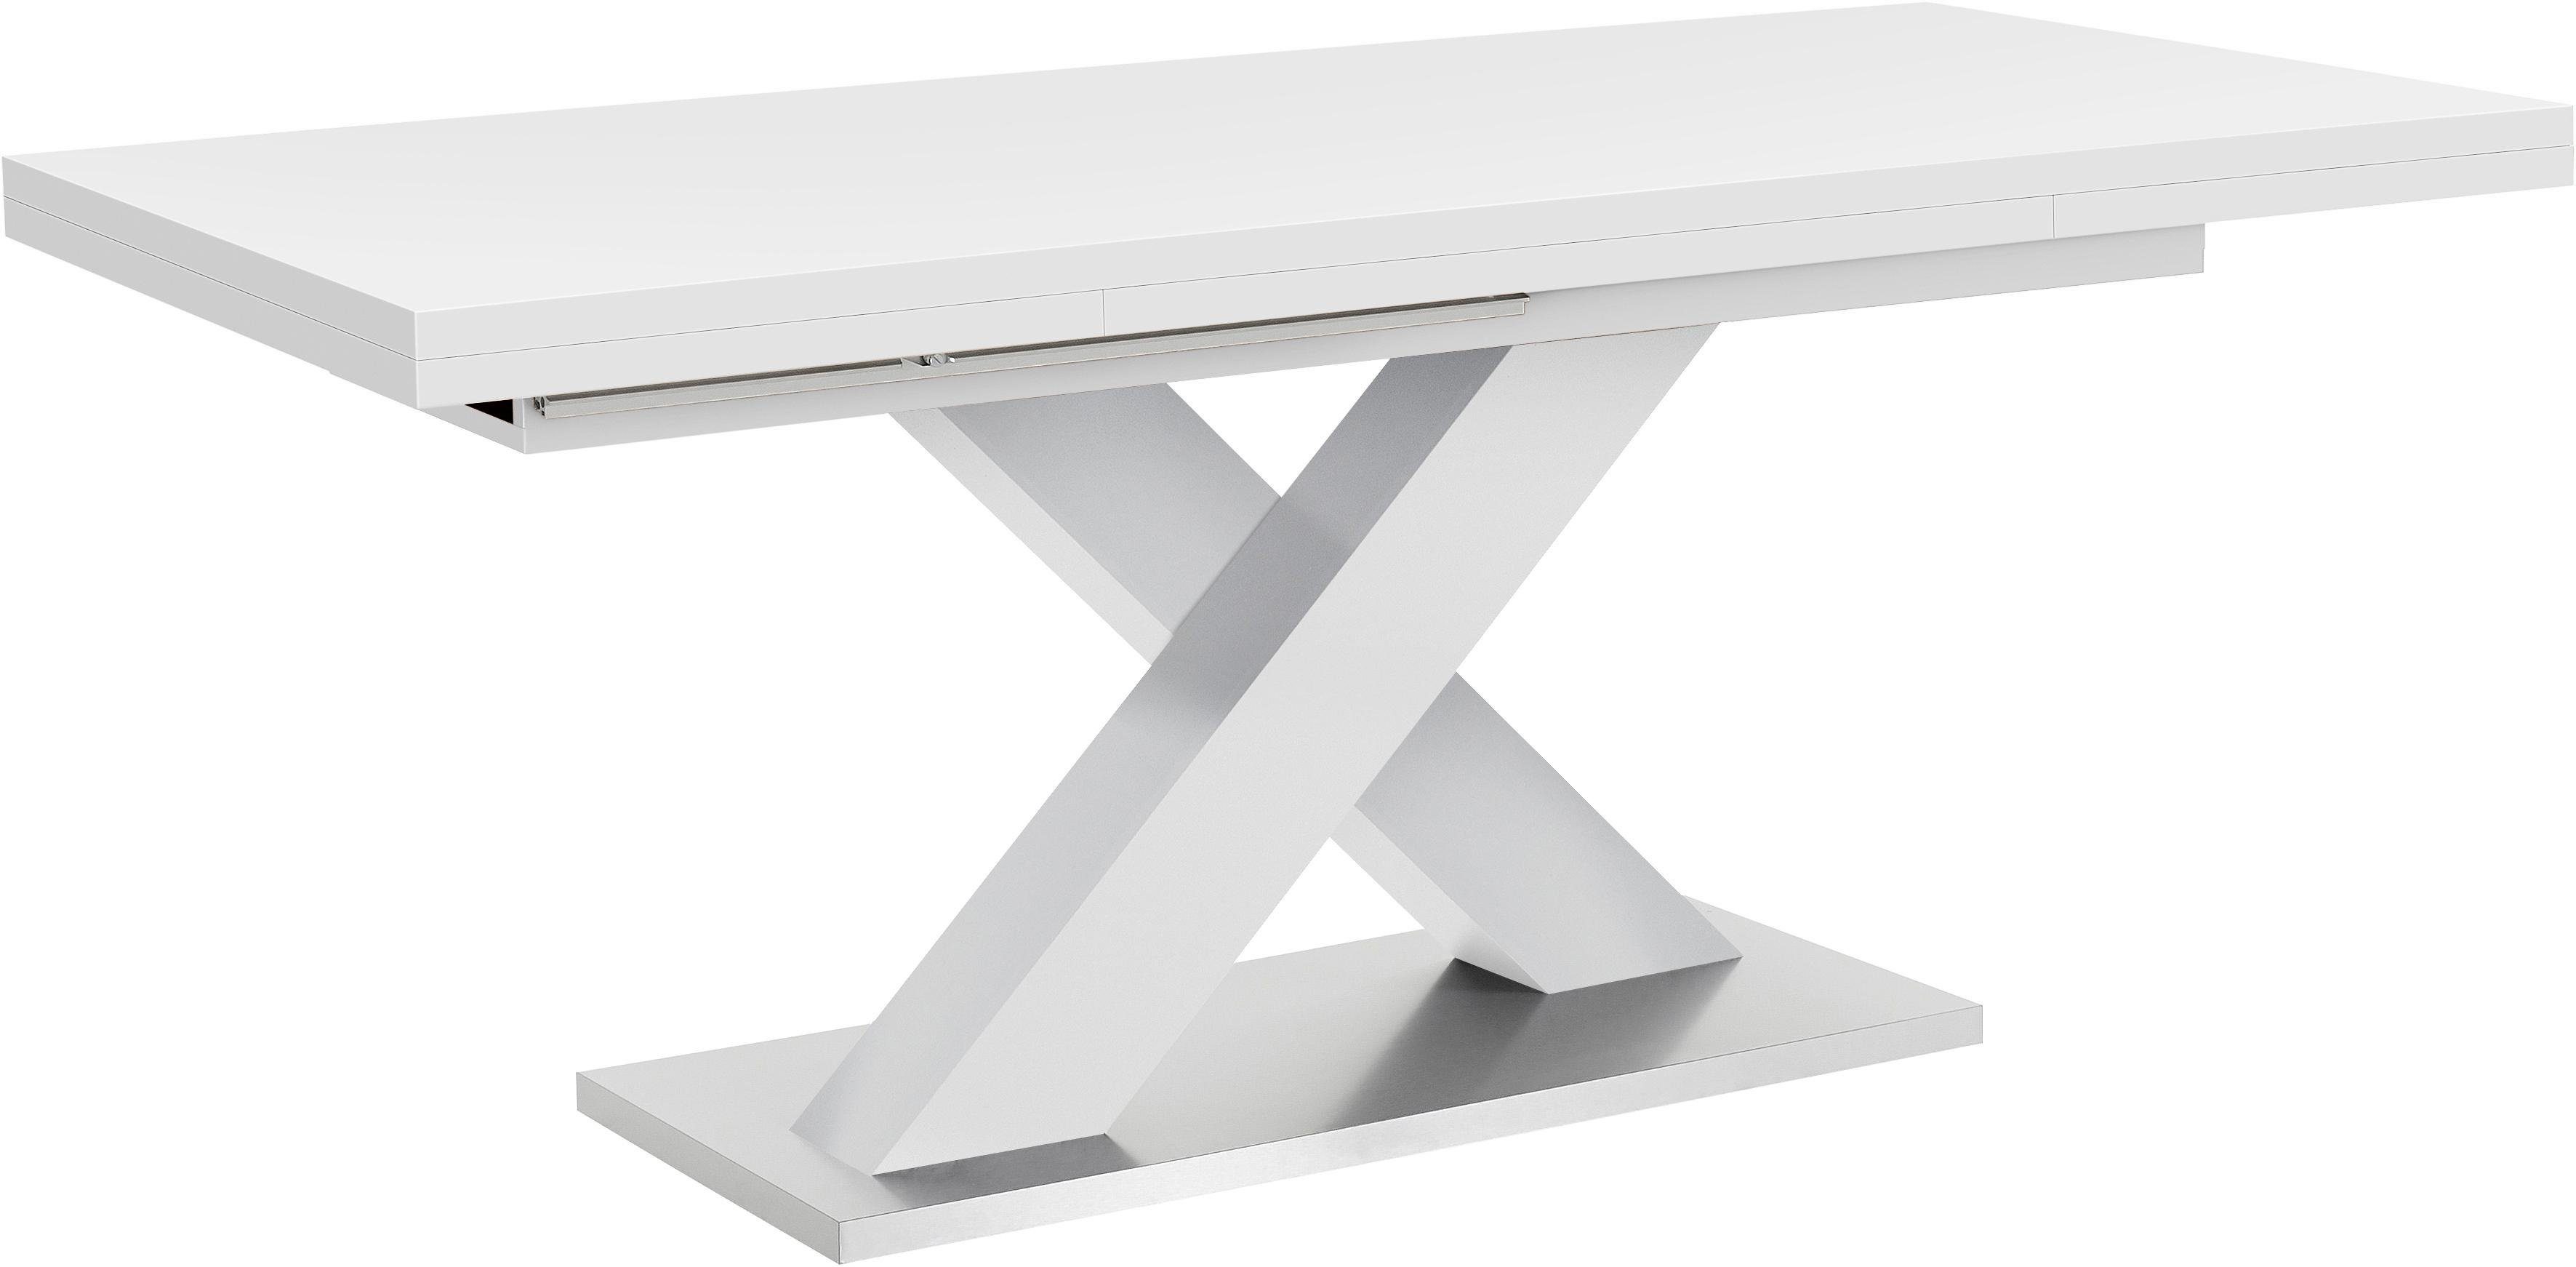 Mäusbacher Eettafel Comfort C met x-frame in wit en met uittrekfunctie, breedte 160-260 cm